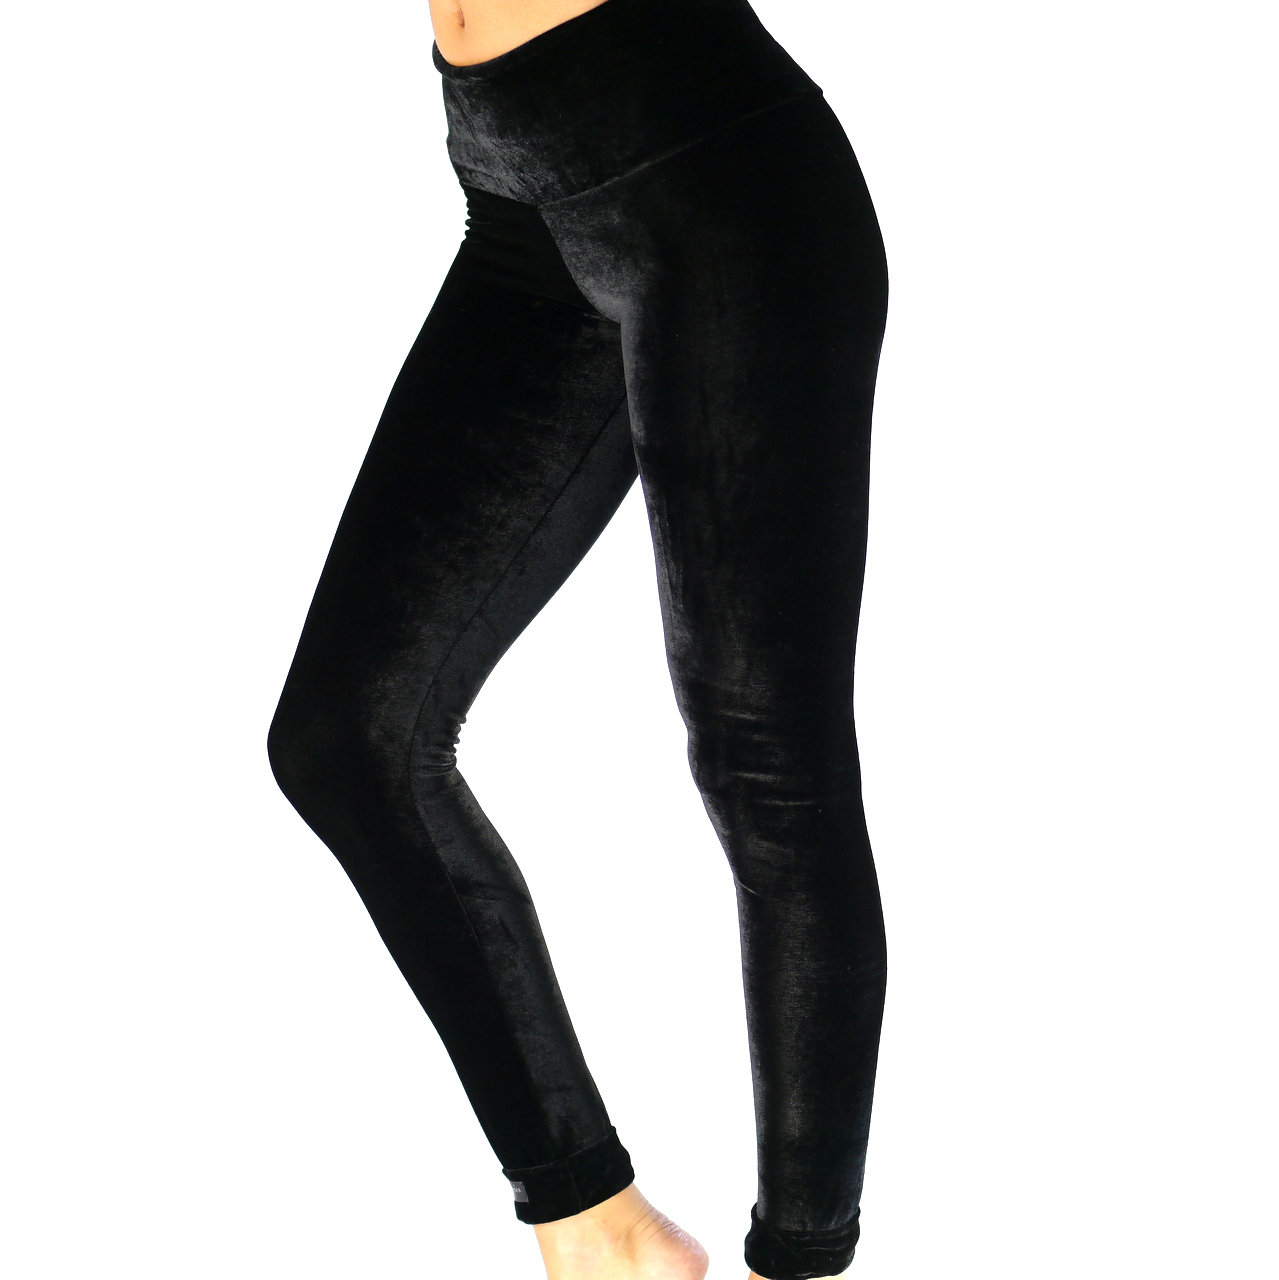 coupon joggen Onderstrepen LEGGING IN zwart fluweel/ Warm fluwelen legging - Etsy België